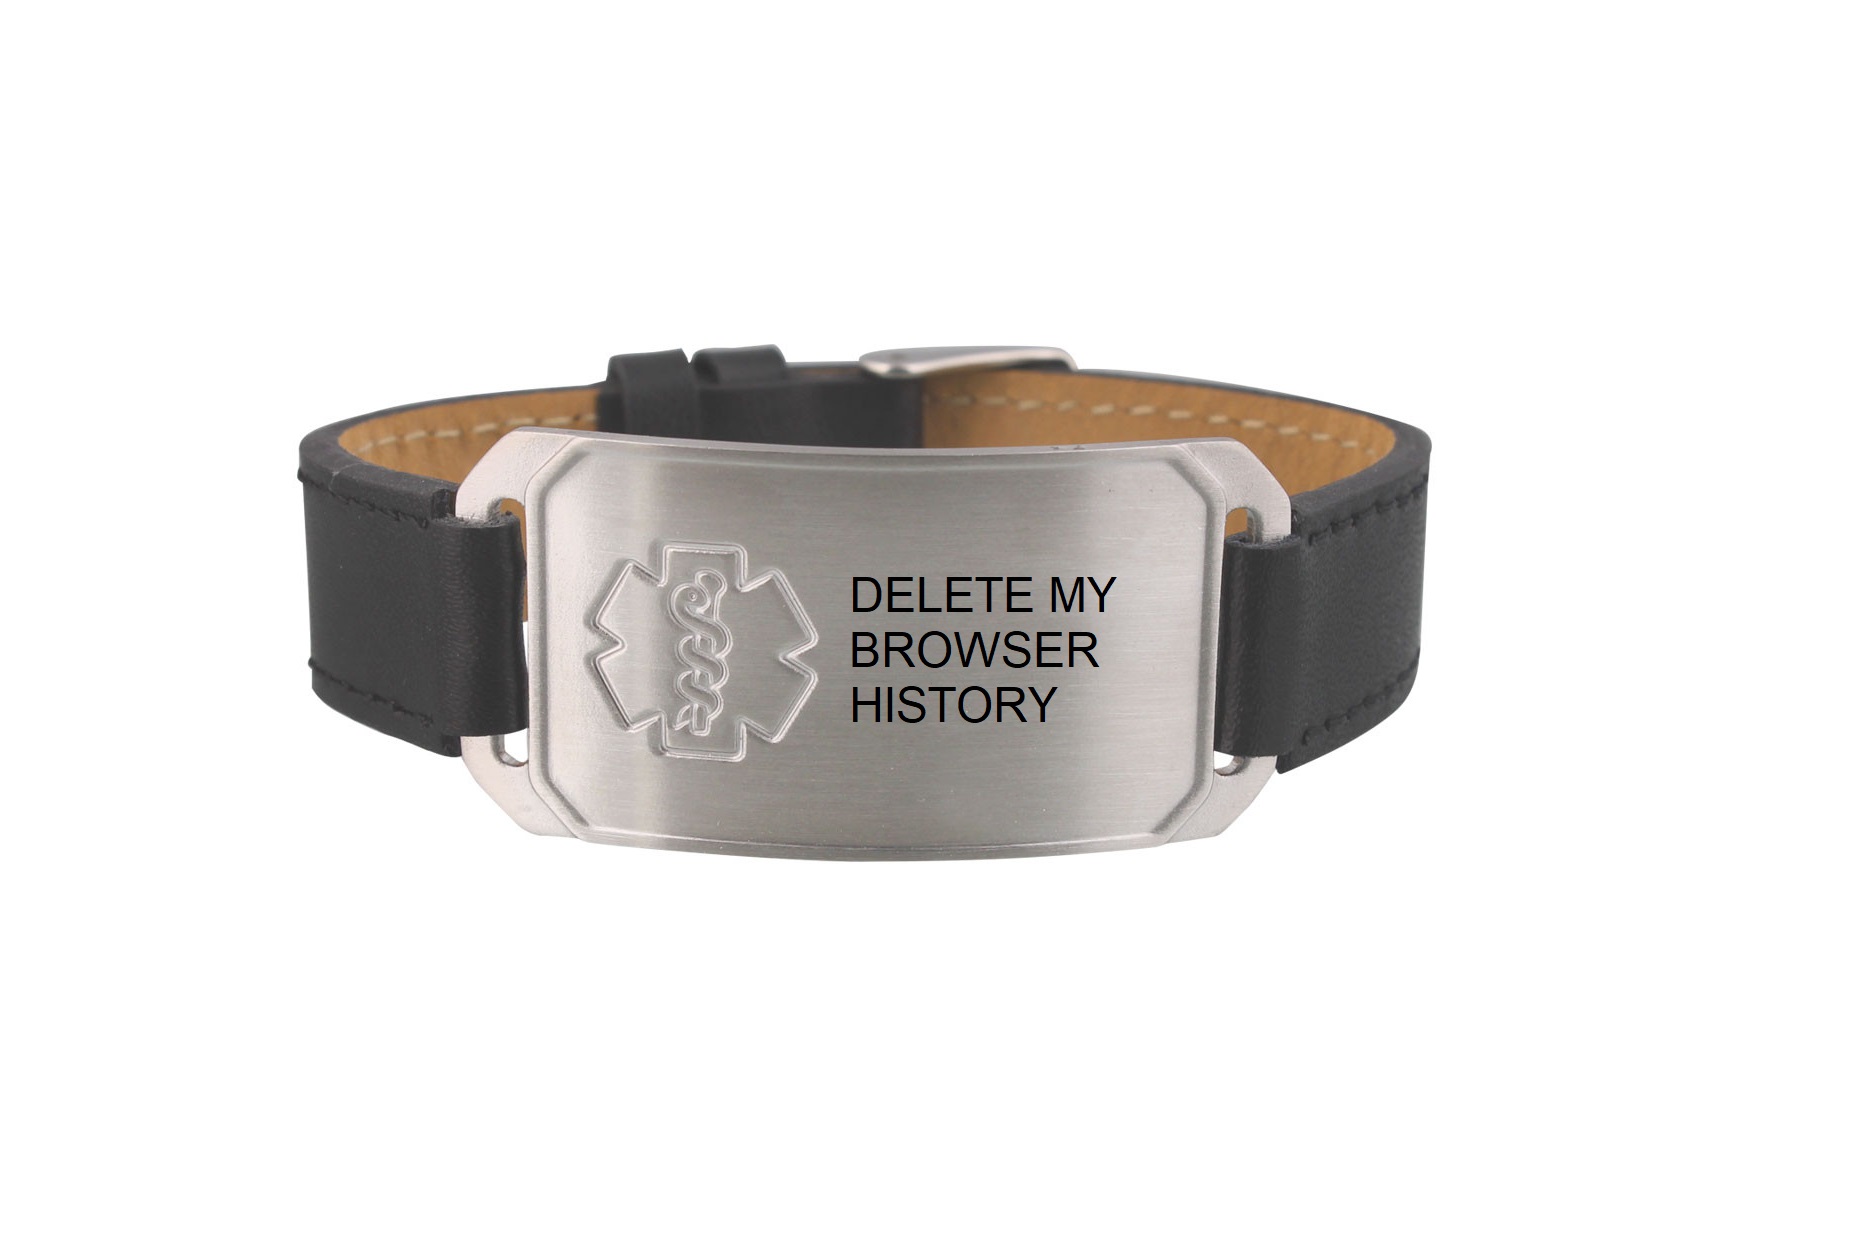 delete my browser history medical alert bracelet